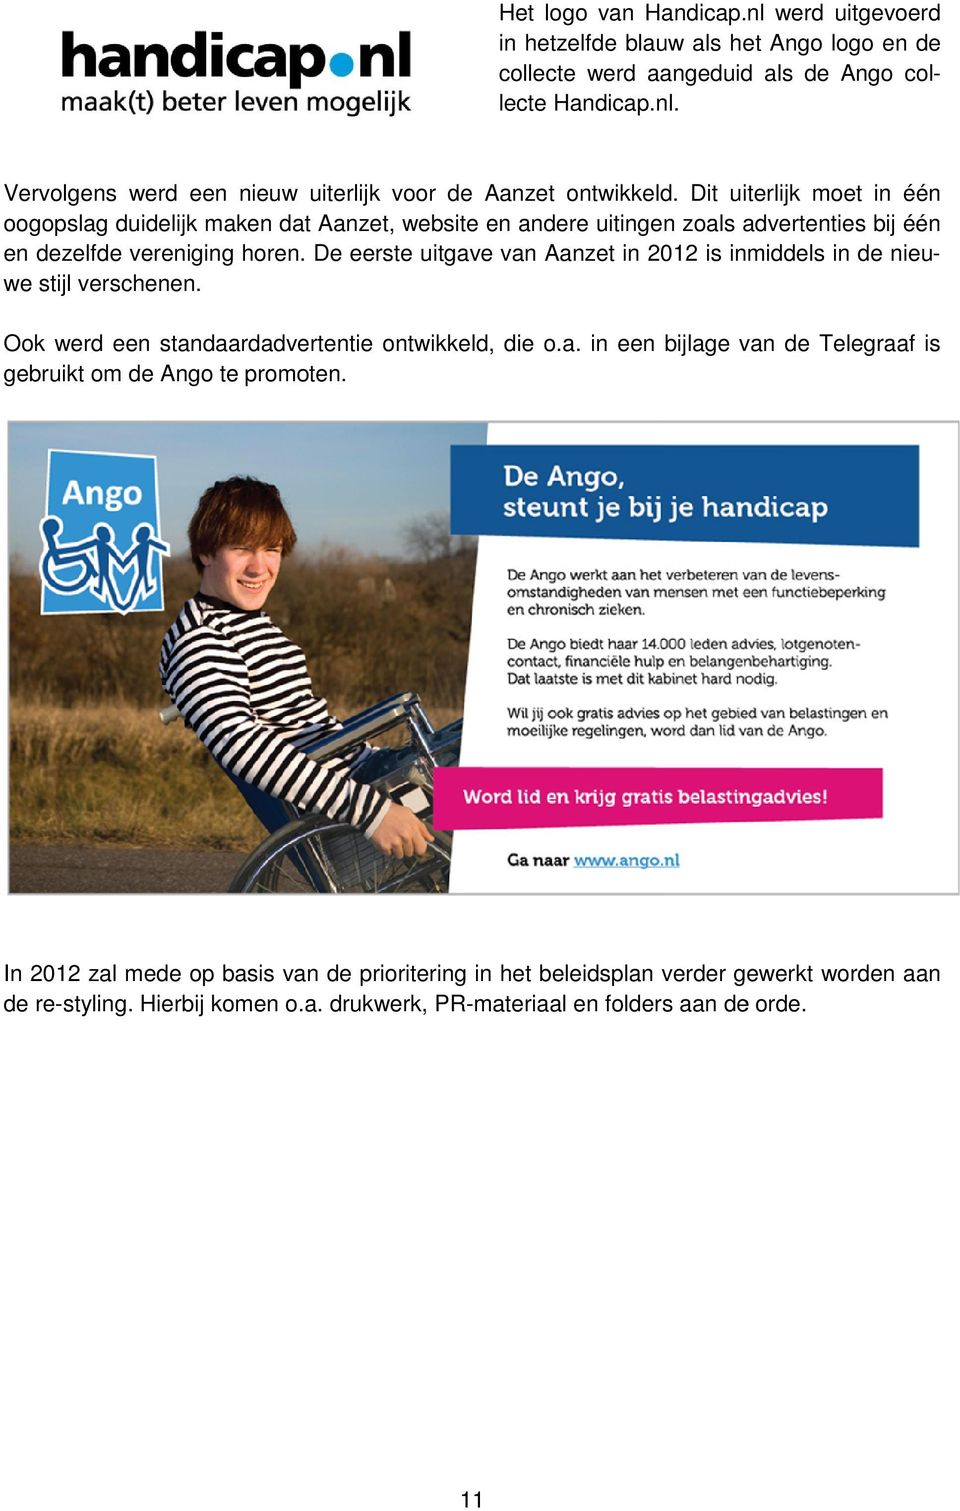 De eerste uitgave van Aanzet in 2012 is in inmiddels in de nieuwe stijl verschenen. Ook werd een standaardadve vertentie ontwikkeld, die o.a. in een bijlage van v de Telegraaf is gebruikt om de Ango te promo oten.